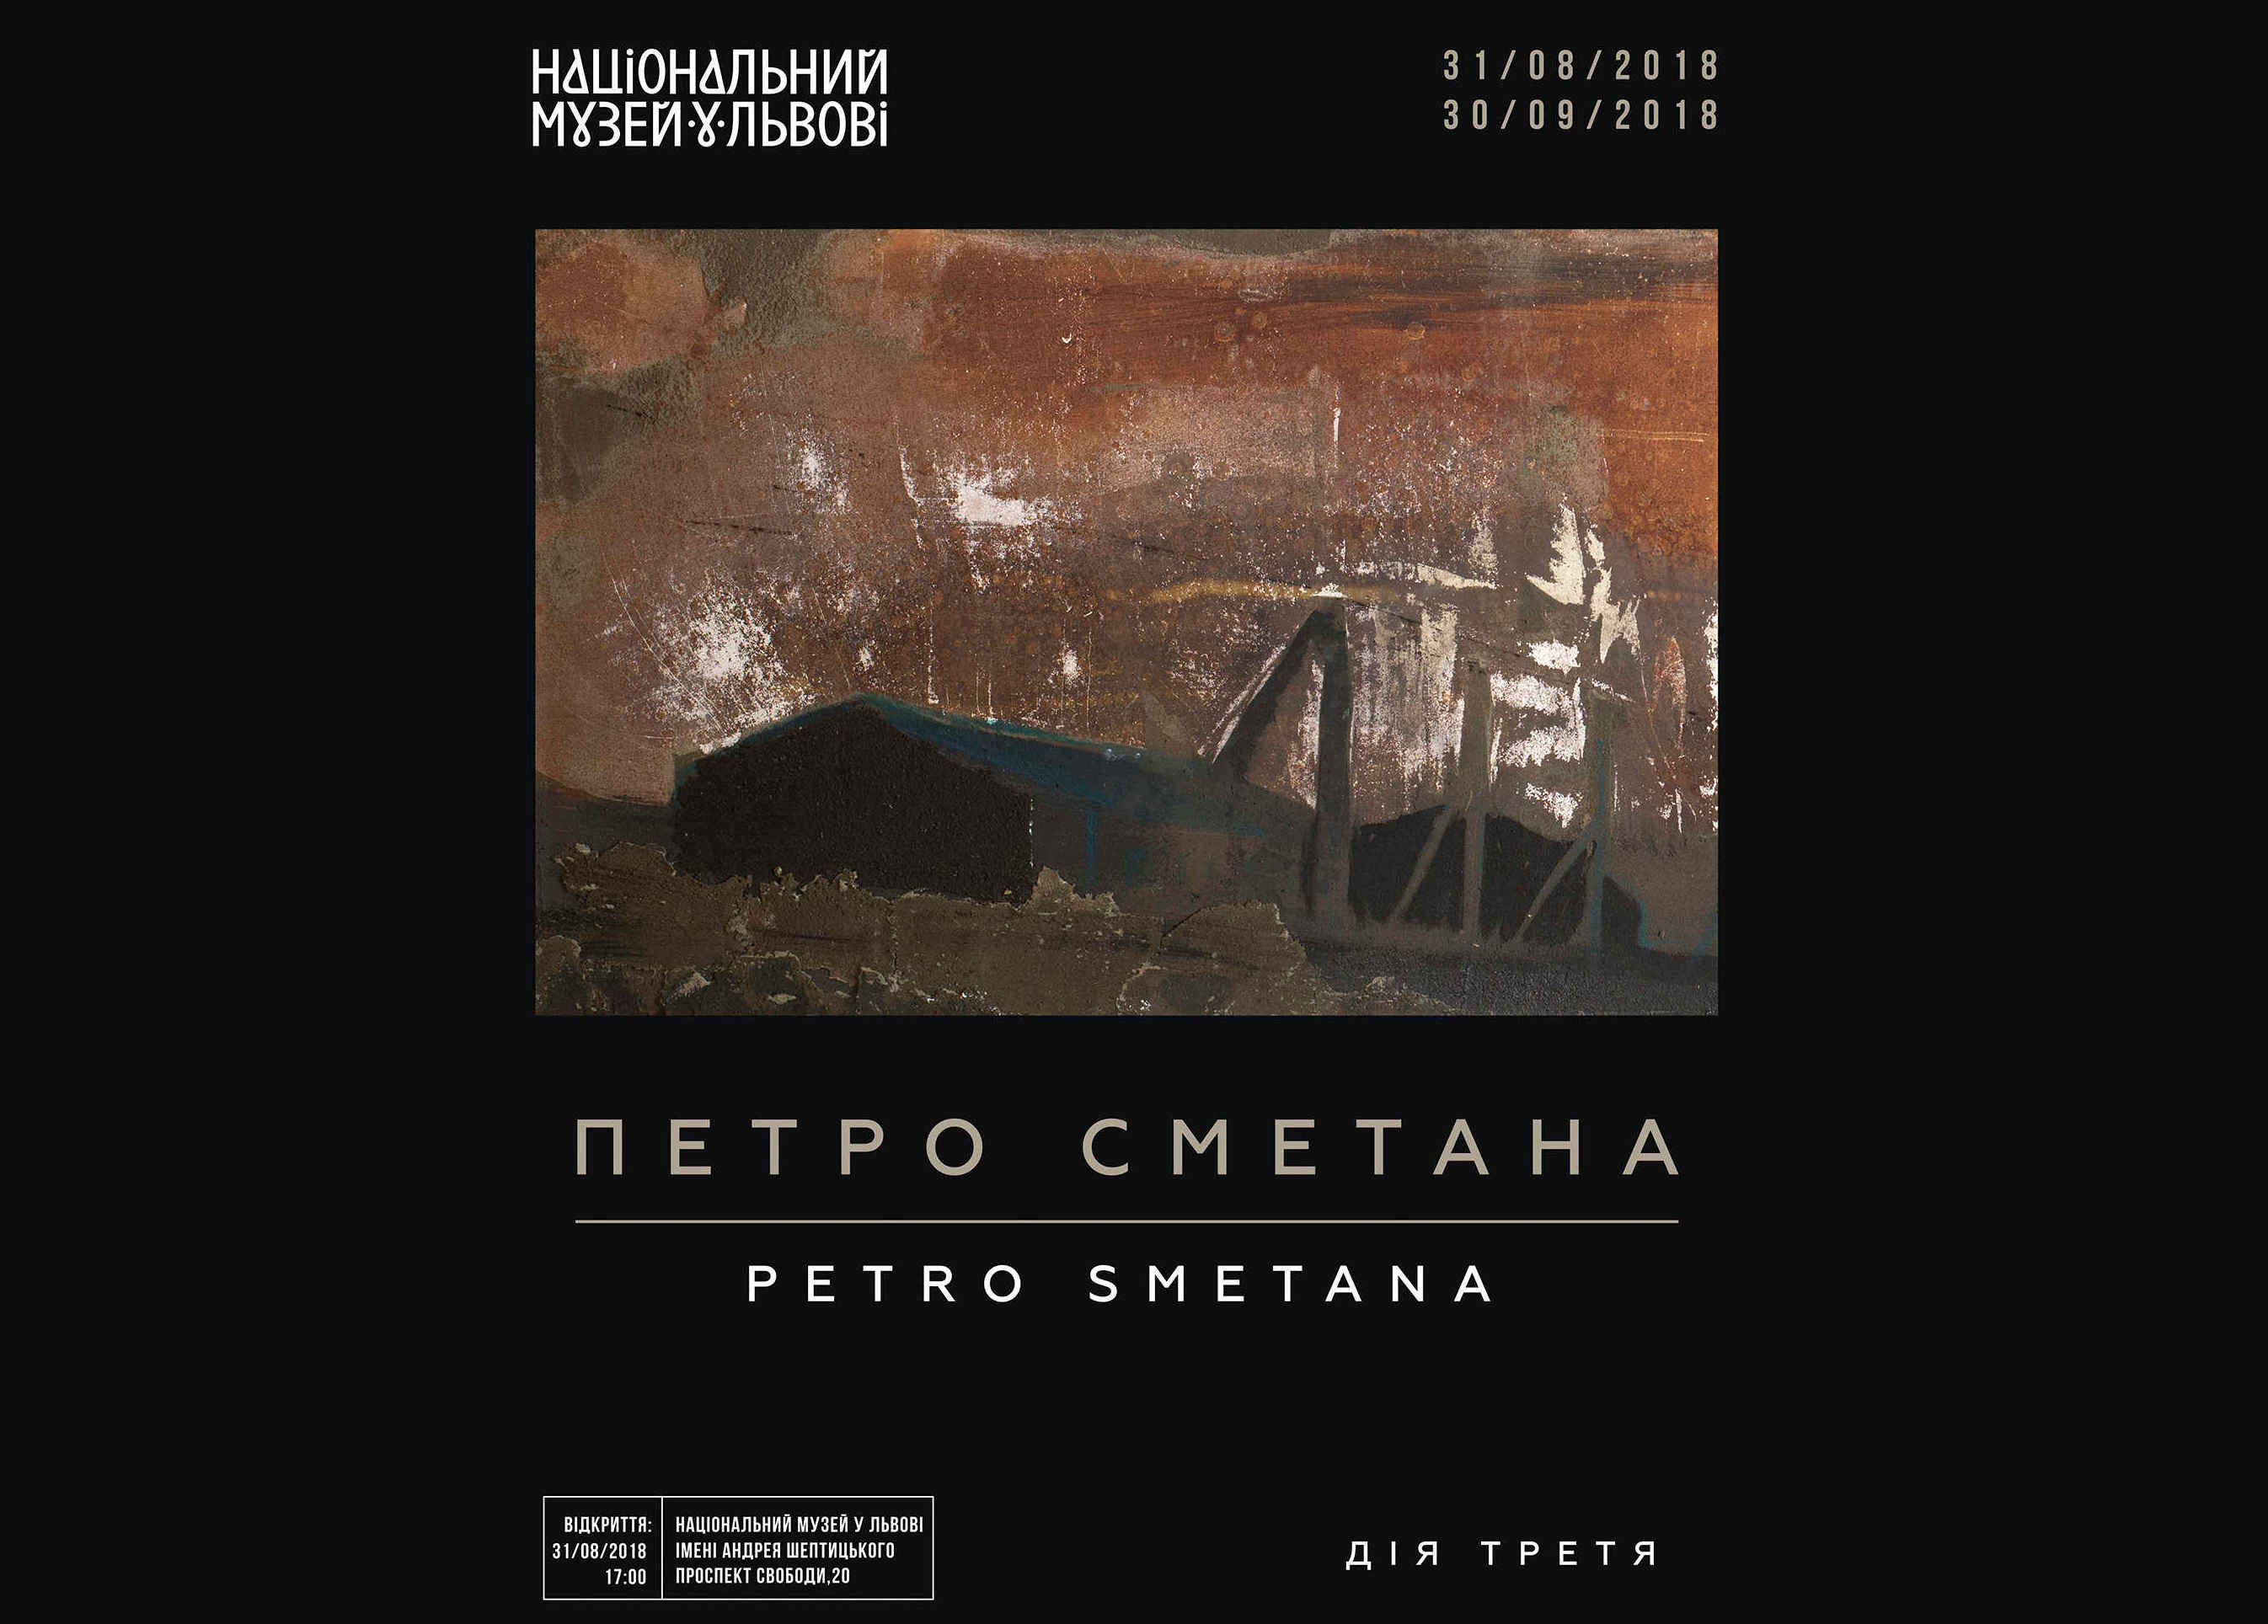 Відкриття проекту  ”Дія третя” в Національному музеї імені Андрея Шептицького